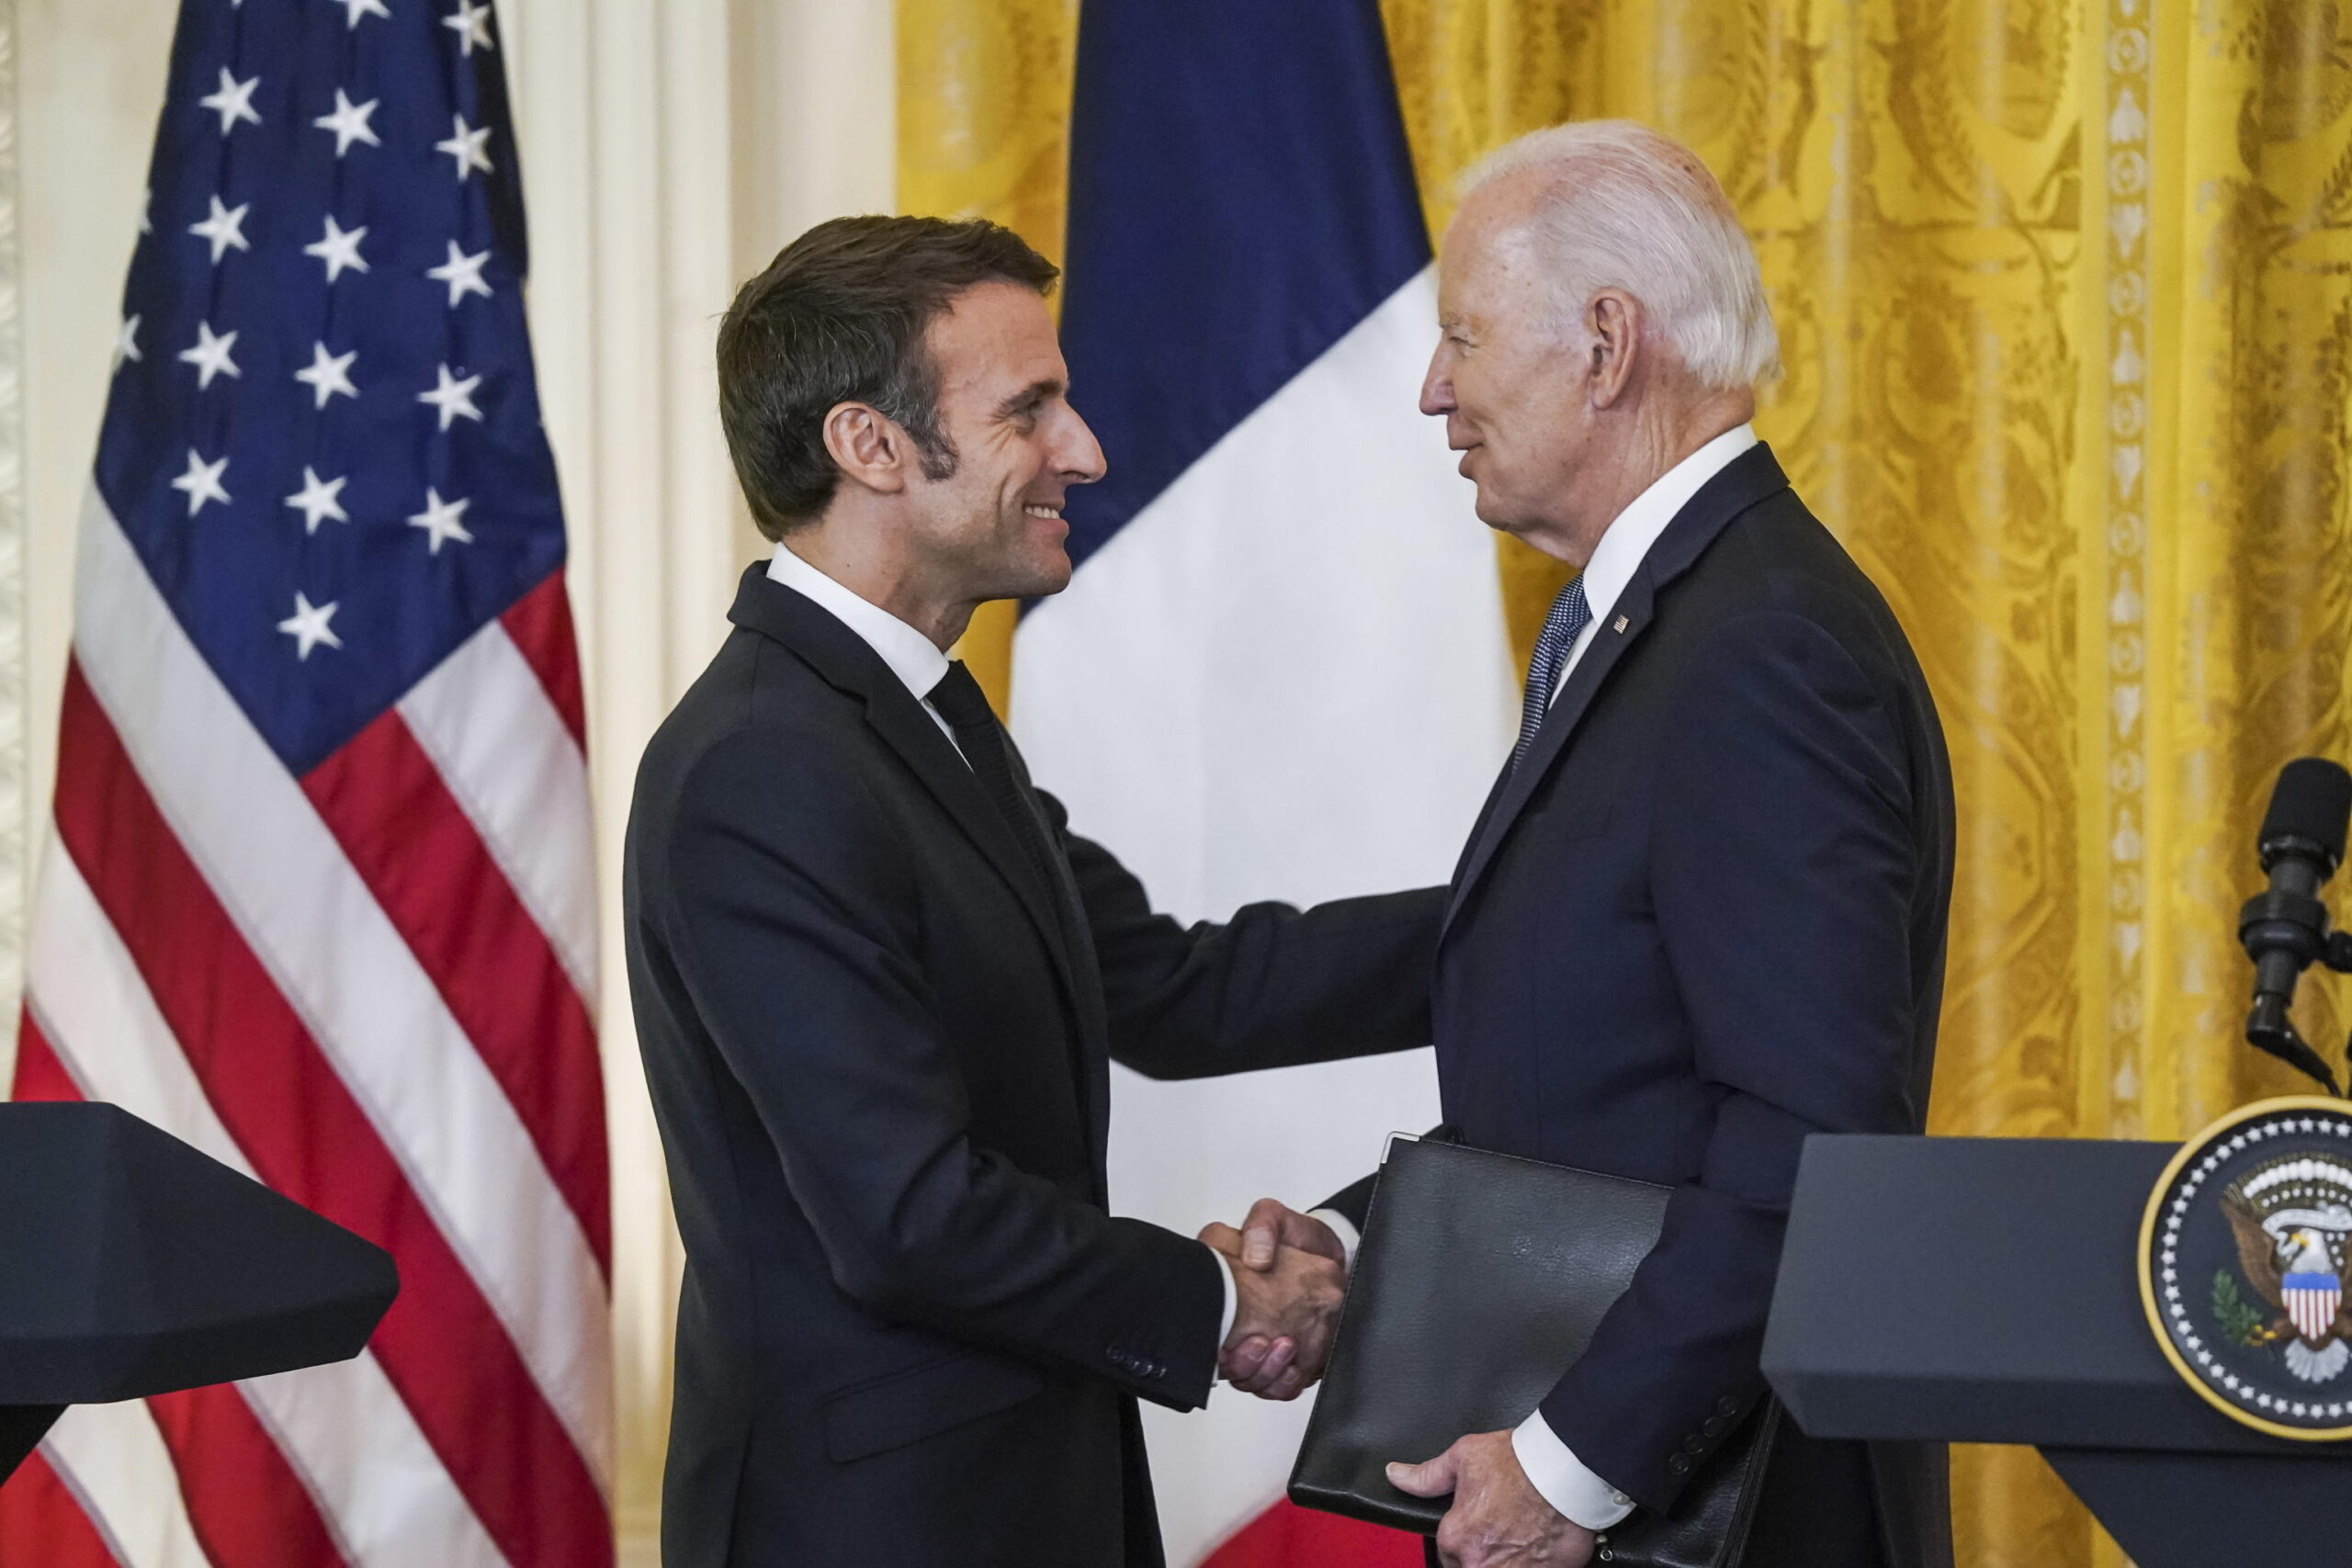 Macron incontra Biden: «Ancora possibile un negoziato di pace con Mosca». Il presidente Usa apre uno spiraglio: «Disponibile a incontrare Putin» – Il video